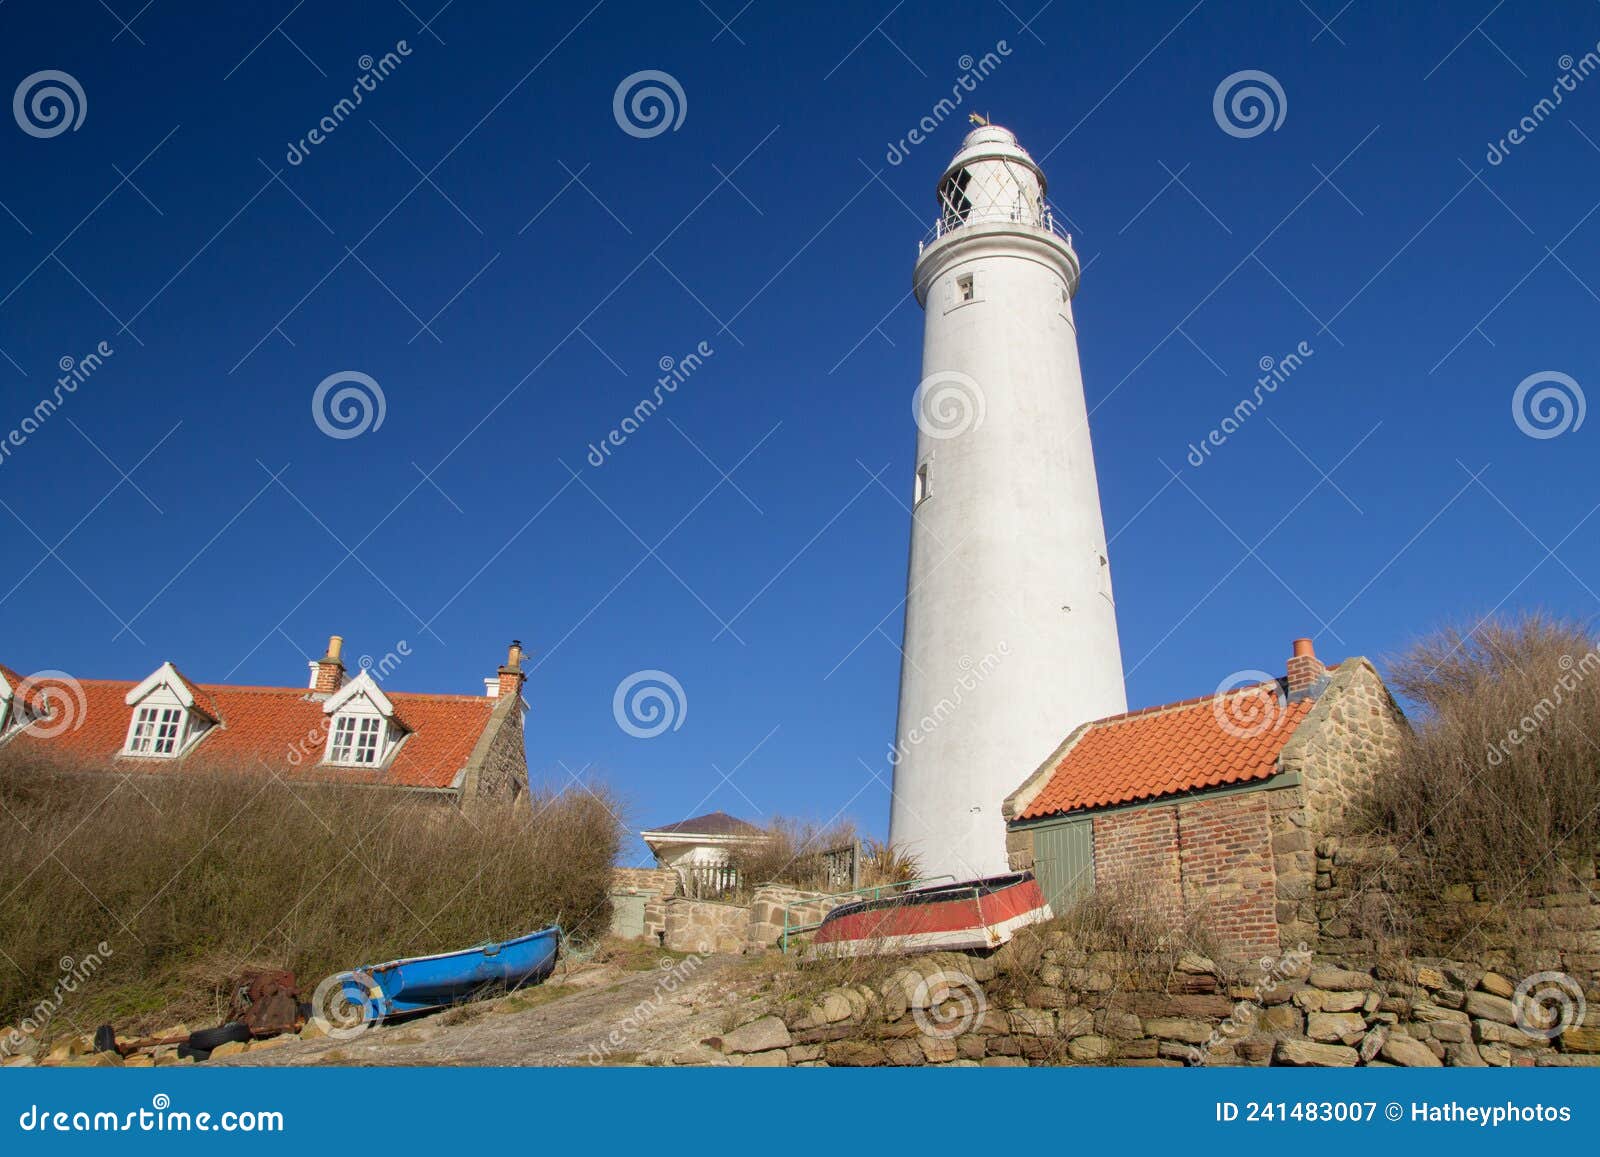 st mary's lighthouse, tyne & wear